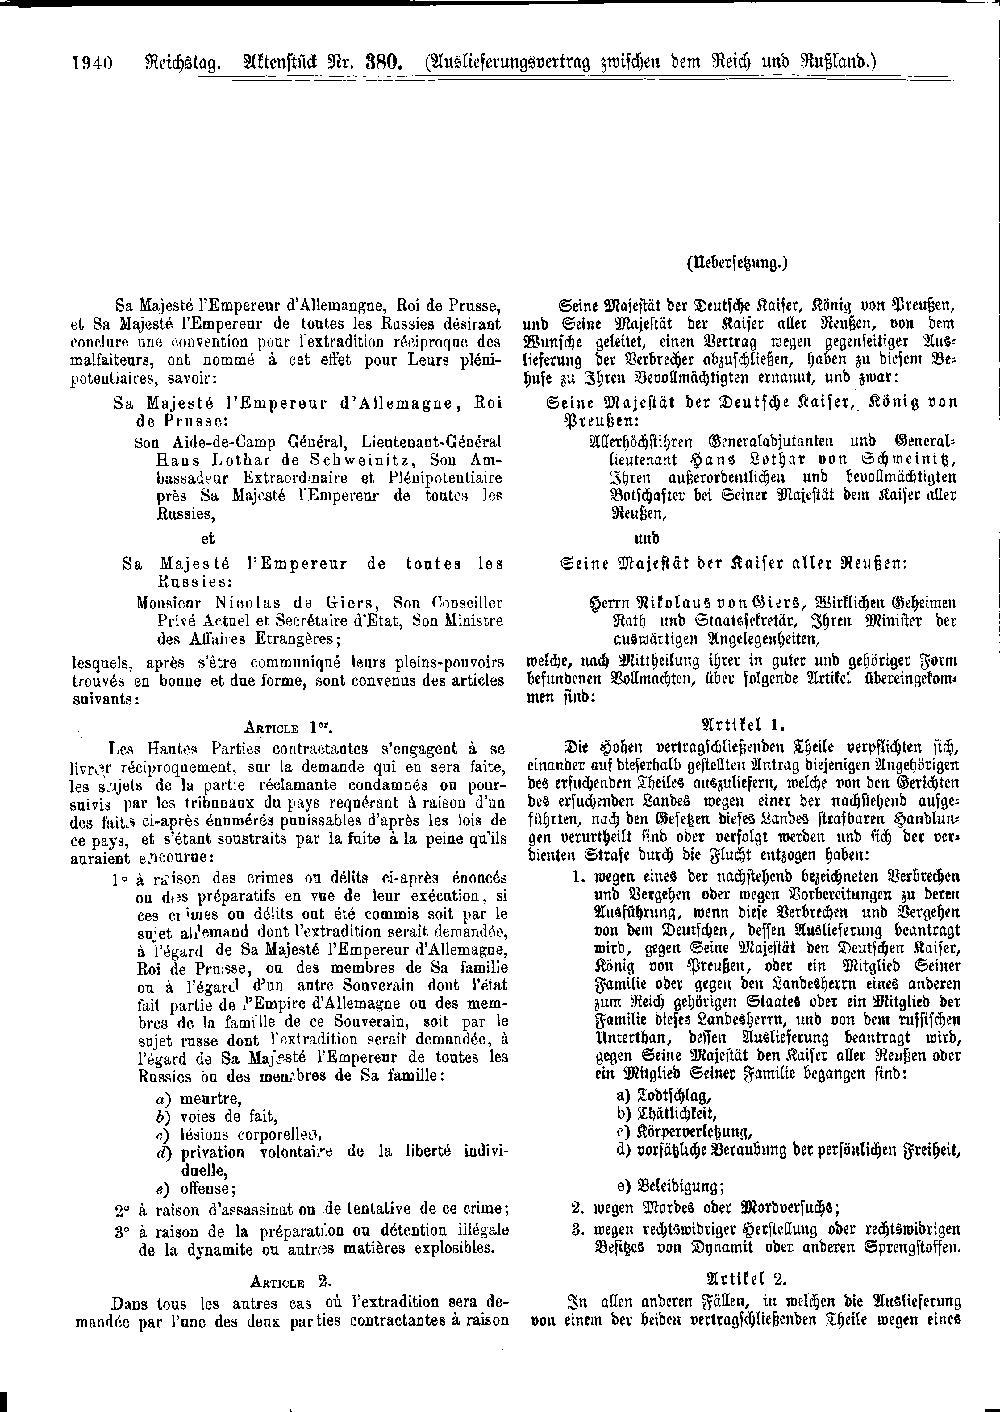 Scan der Seite 1940